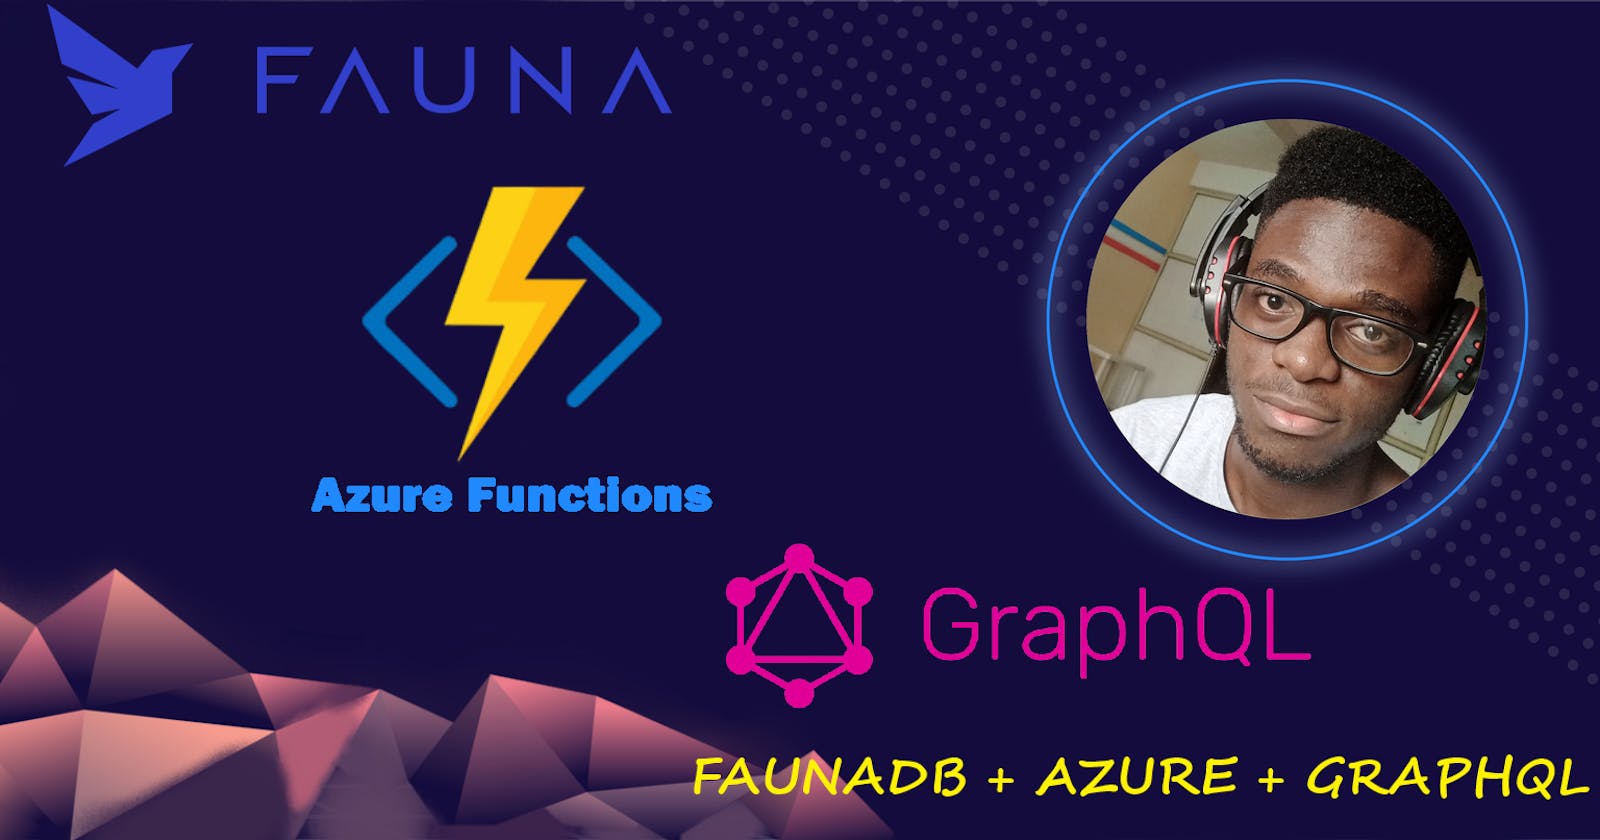 Fauna + Azure Functions